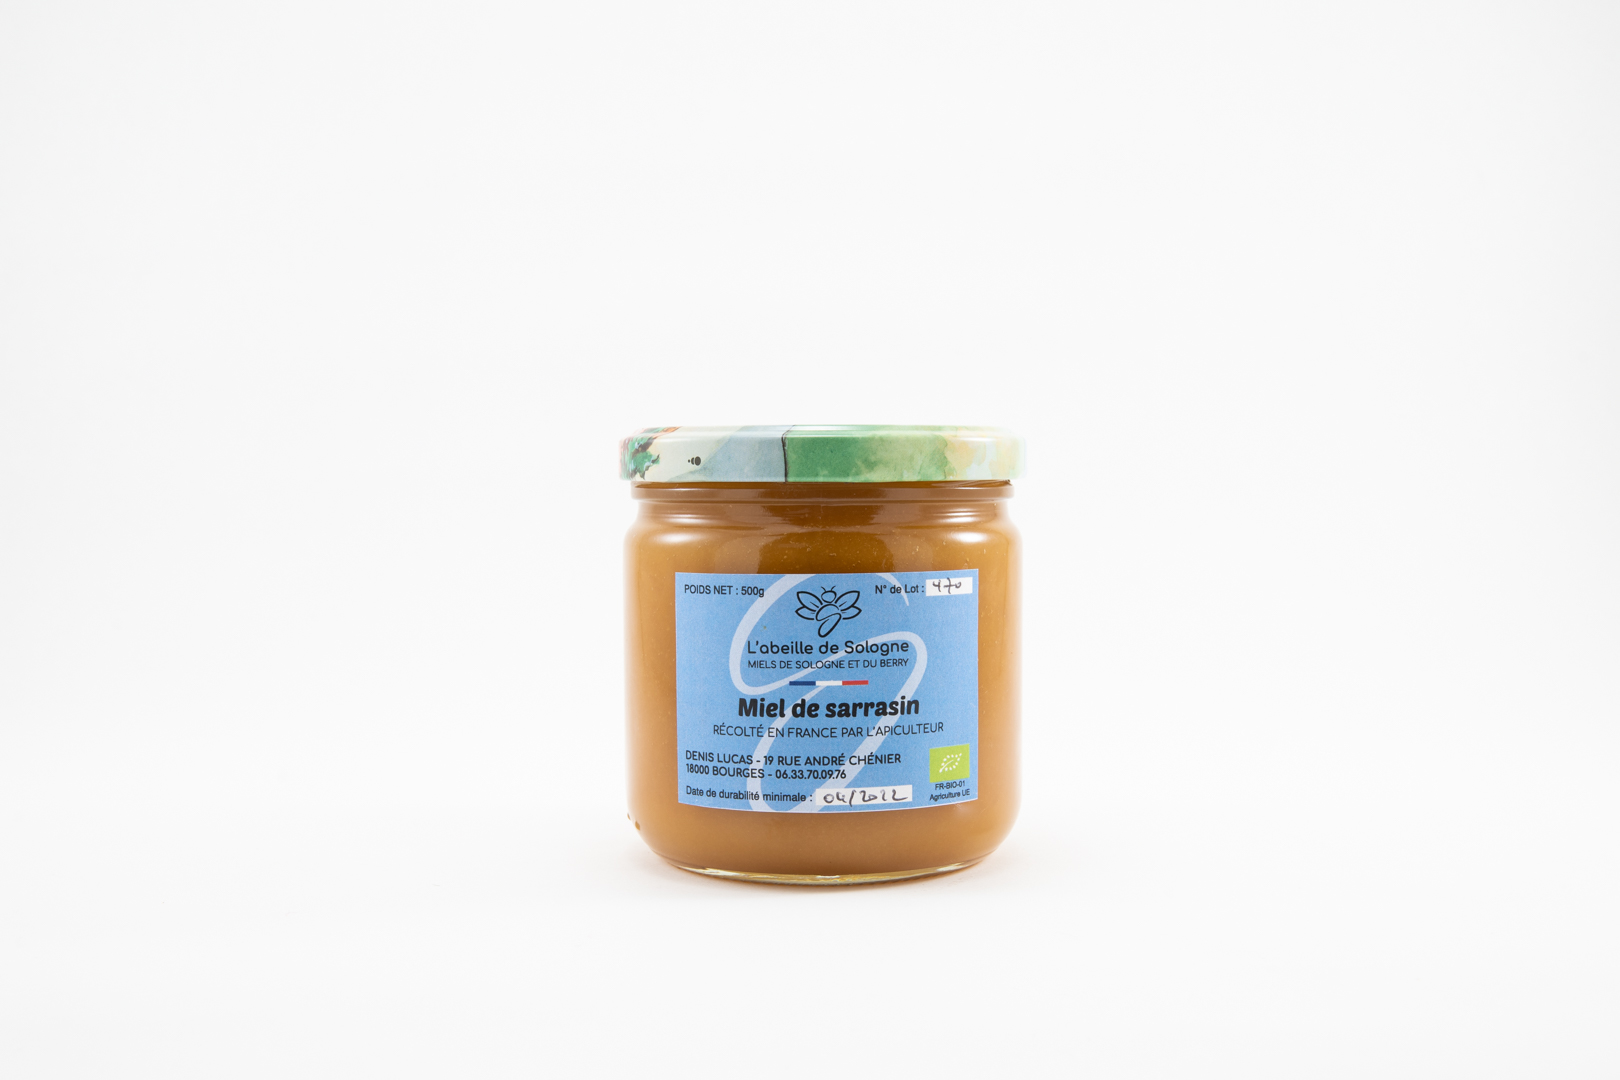 Miel de sarrasin de Sologne 500 g